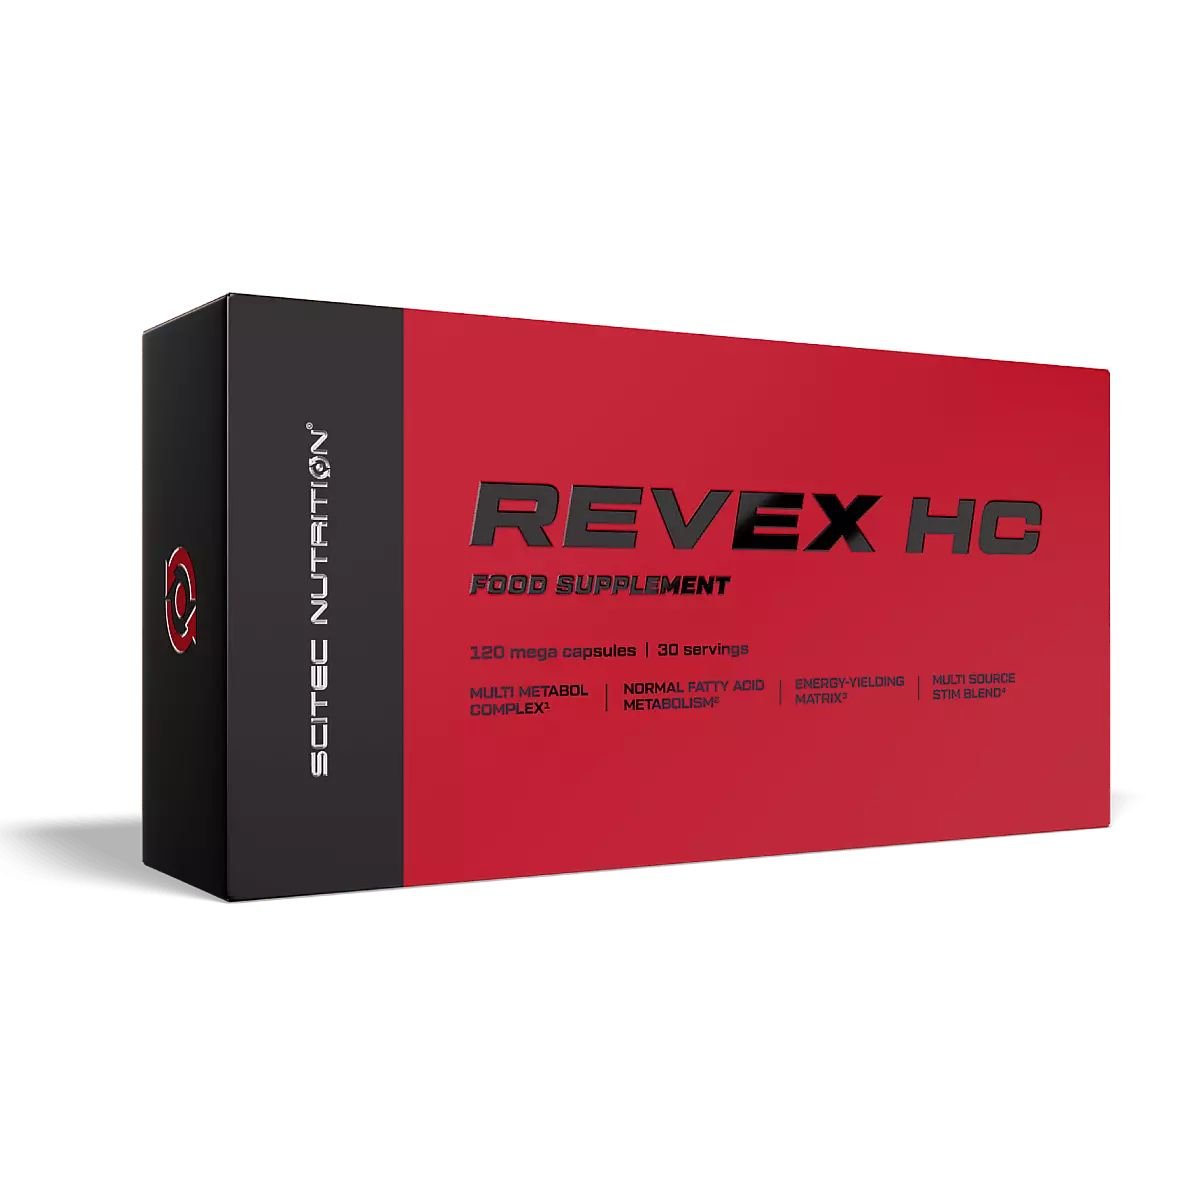 Жиросжигатель Scitec Revex HC, 120 капсул,  мл, Scitec Nutrition. Жиросжигатель. Снижение веса Сжигание жира 